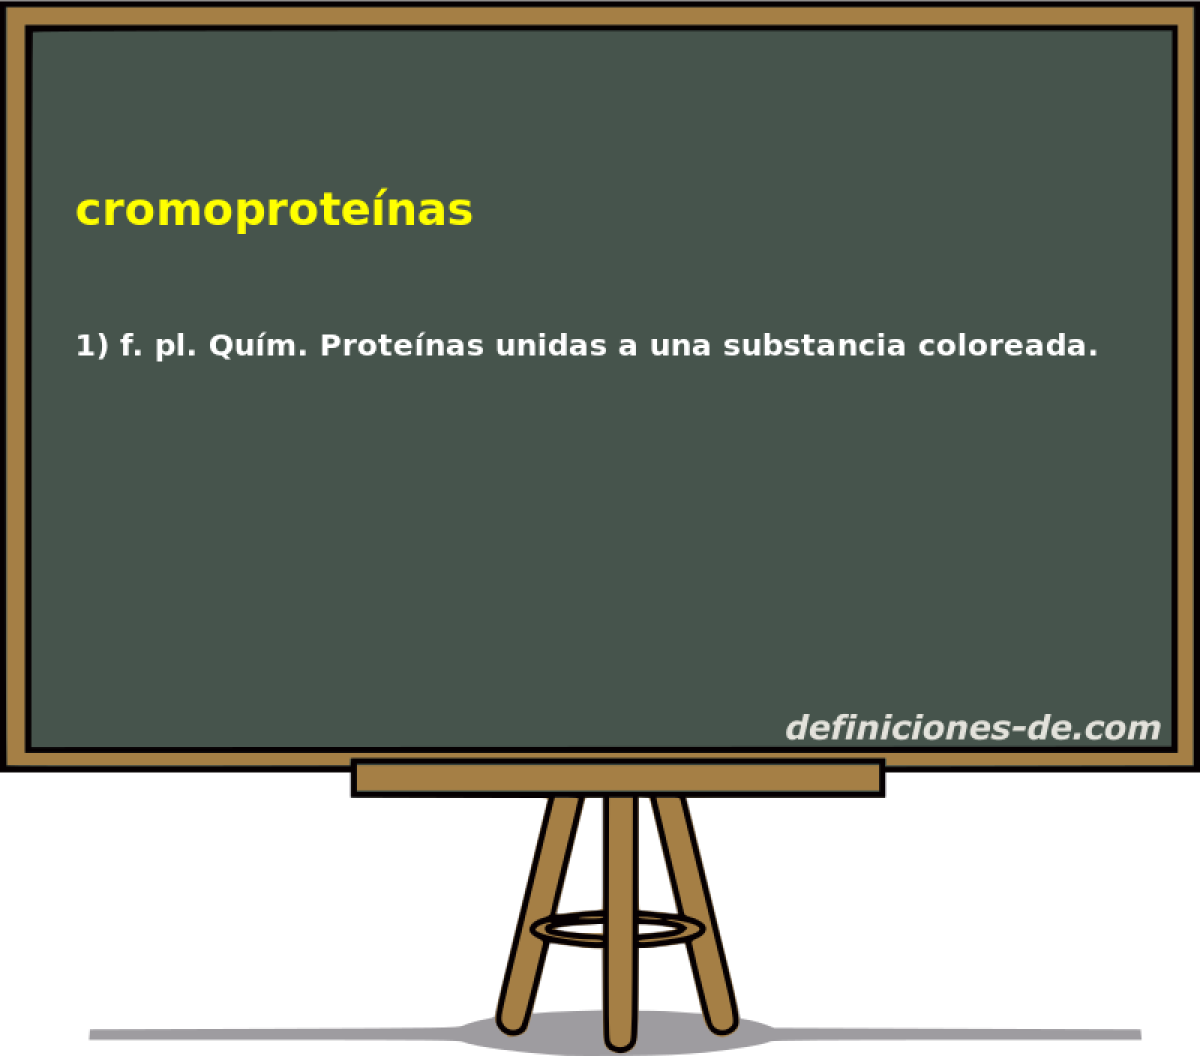 cromoprotenas 